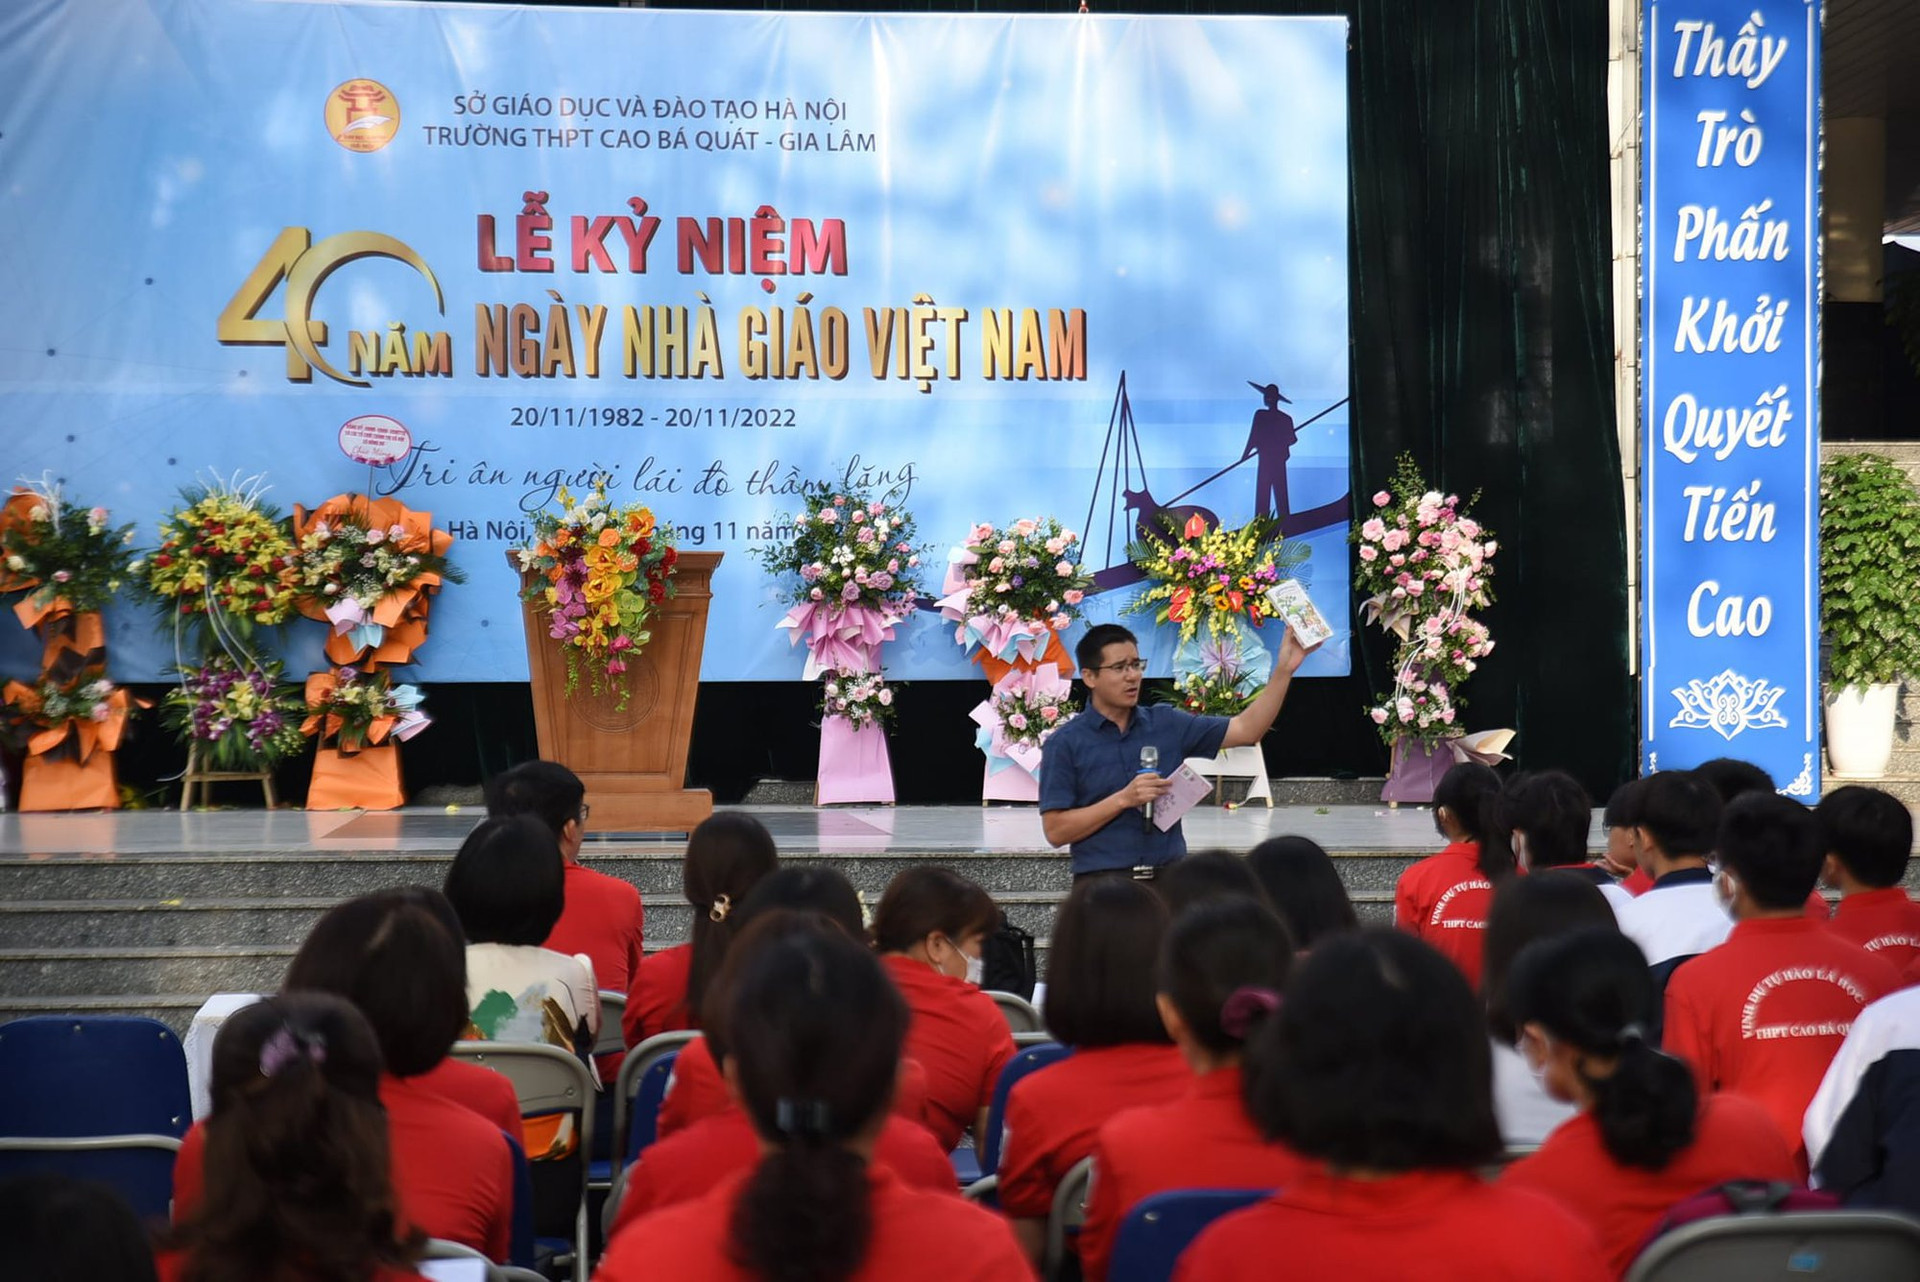 Ông Nguyễn Quốc Vương nói chuyện về văn hóa đọc tại trường THPT Cao Bá Quát!